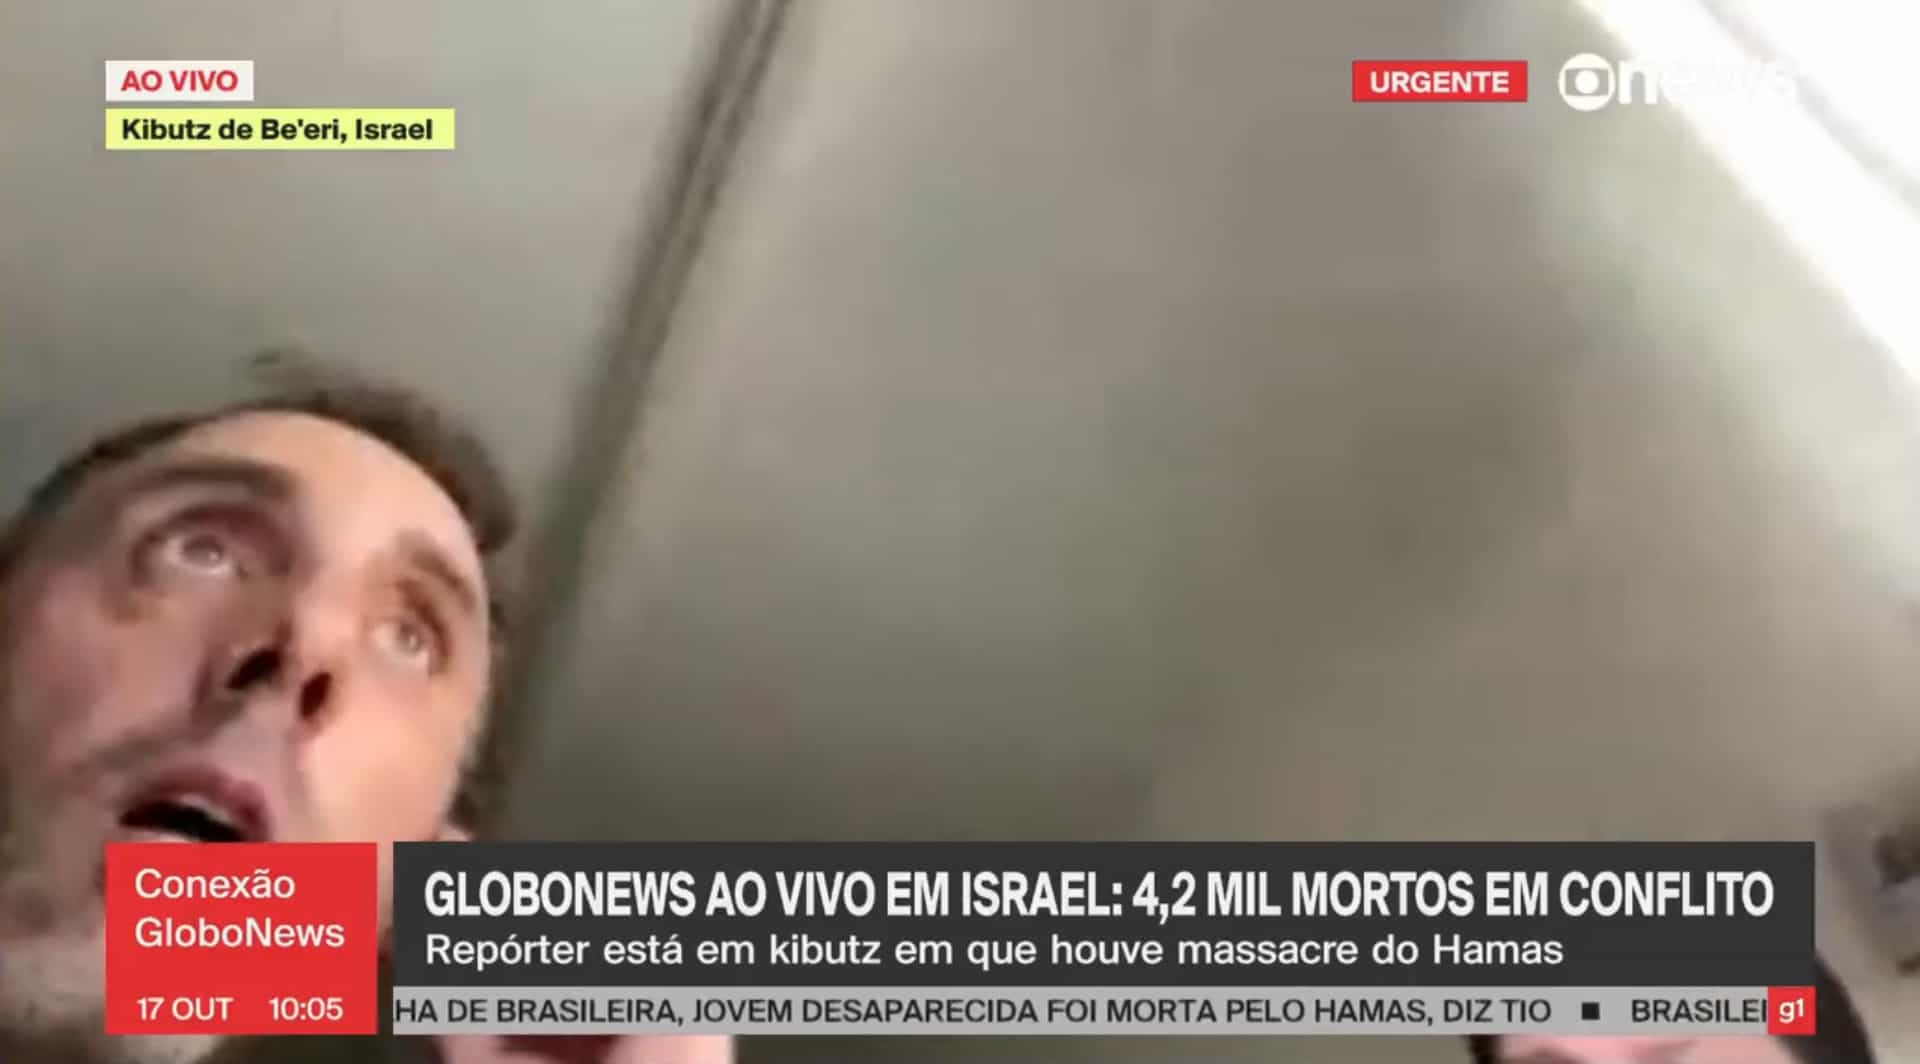 Documentarista da GloboNews foge ao vivo de ataque em Israel; vídeo